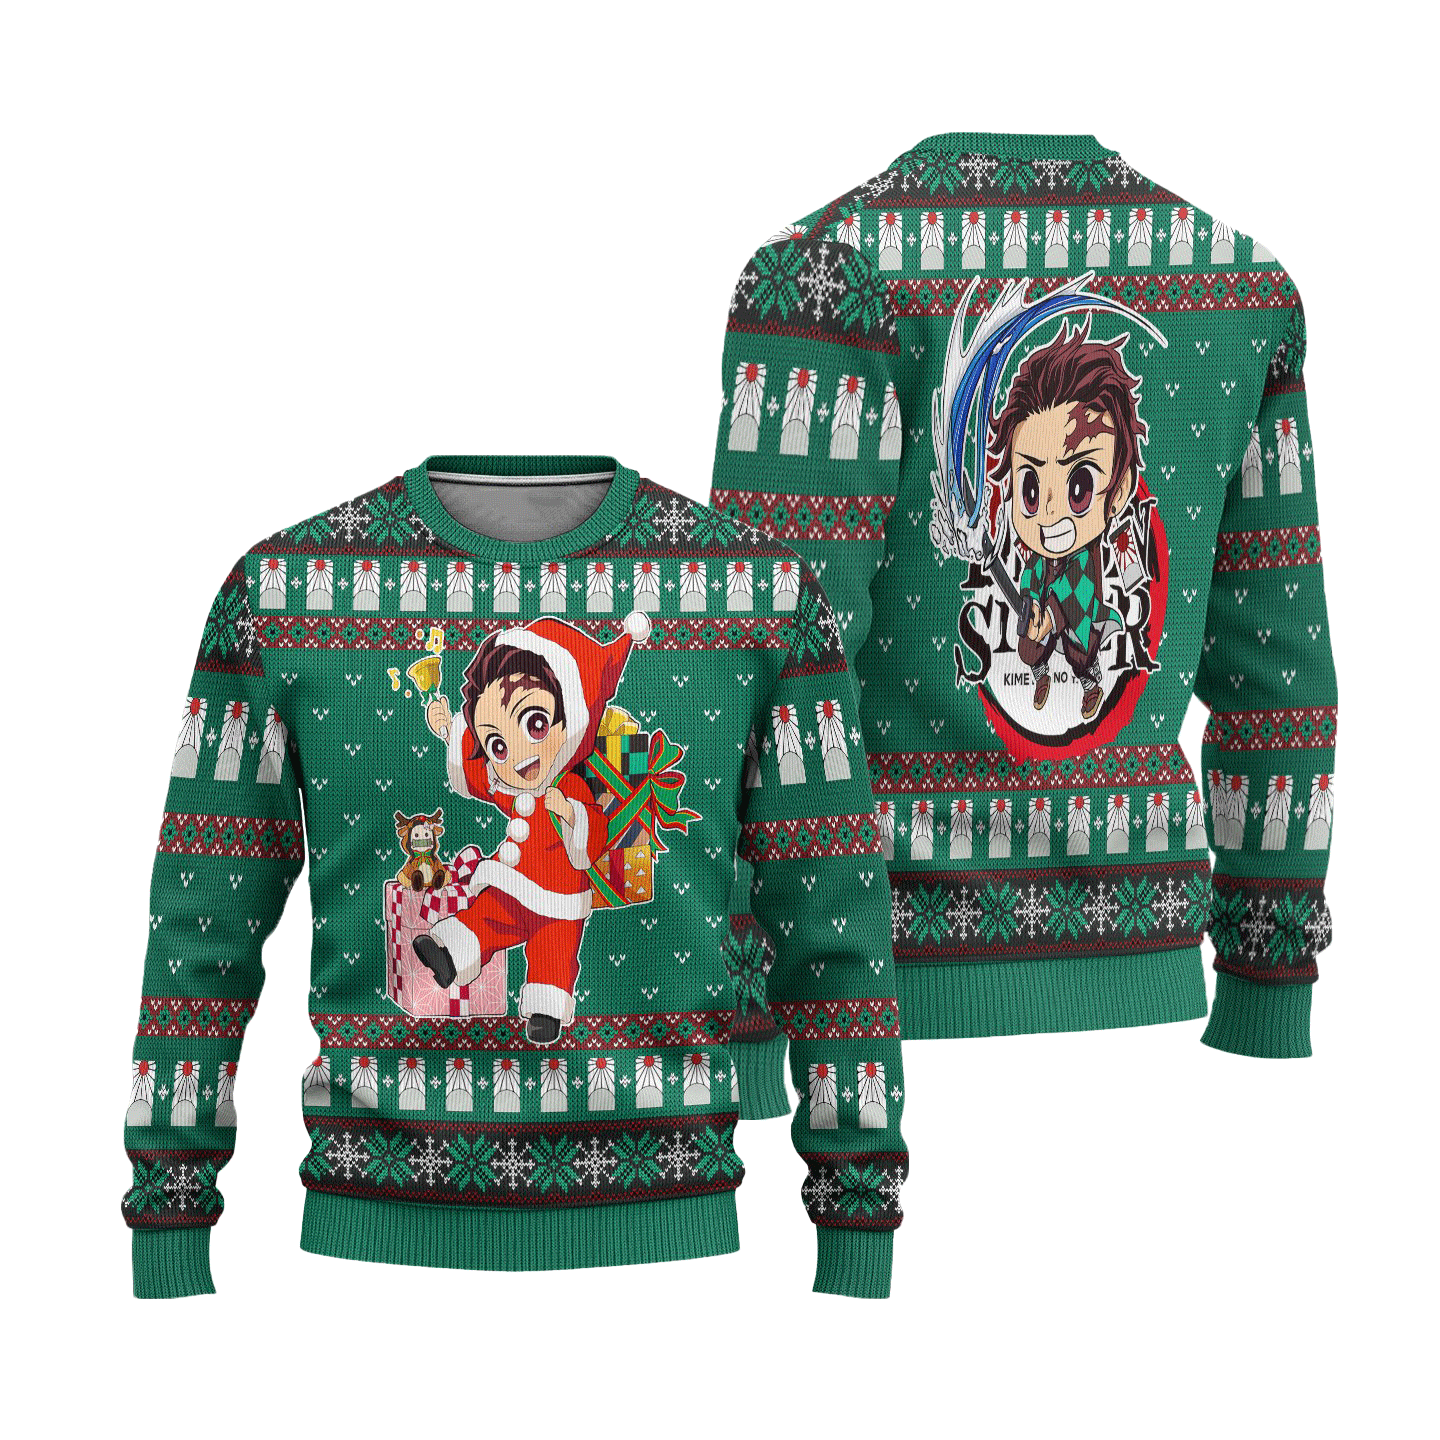 Tanjiro Kamado Demon Slayer Anime Ugly Christmas Sweater Xmas Gift